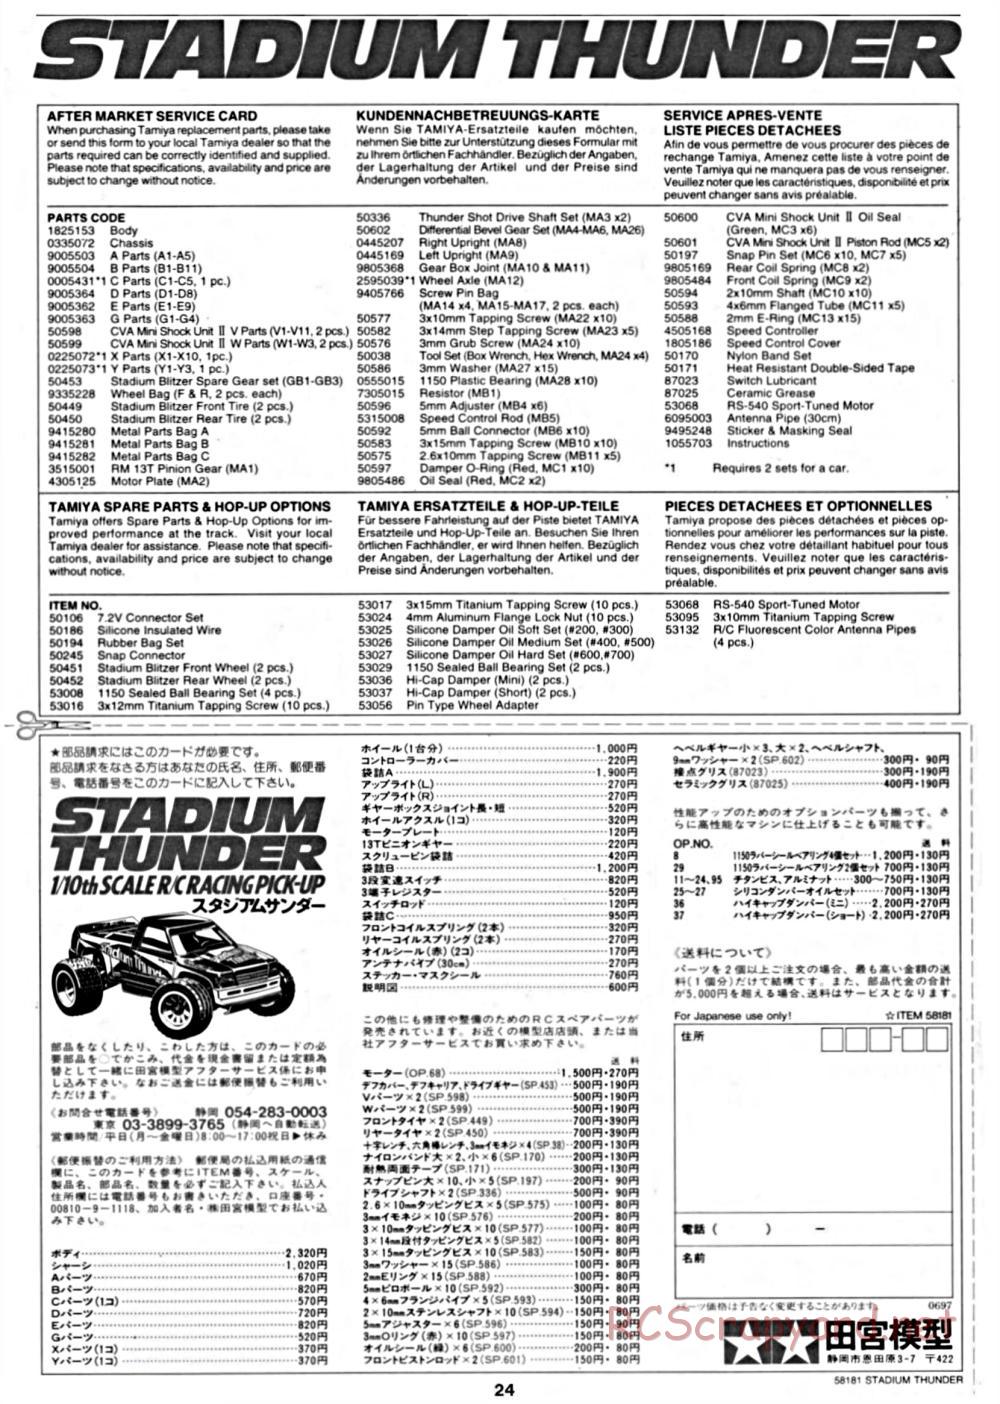 Tamiya - Stadium Thunder Chassis - Manual - Page 24